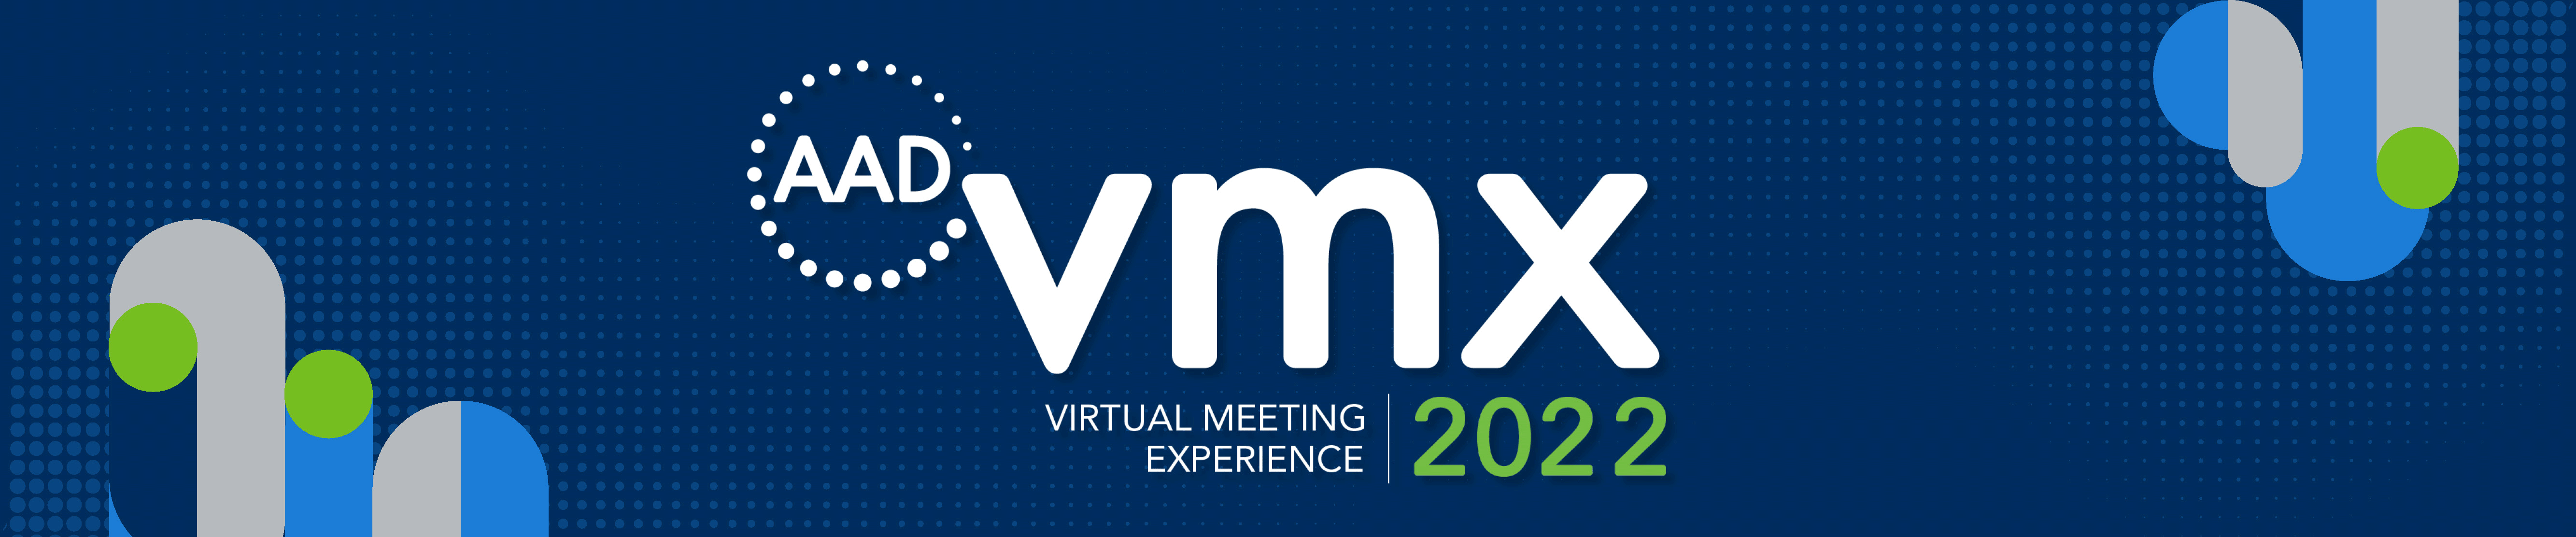 AAD VMX 2022 banner image